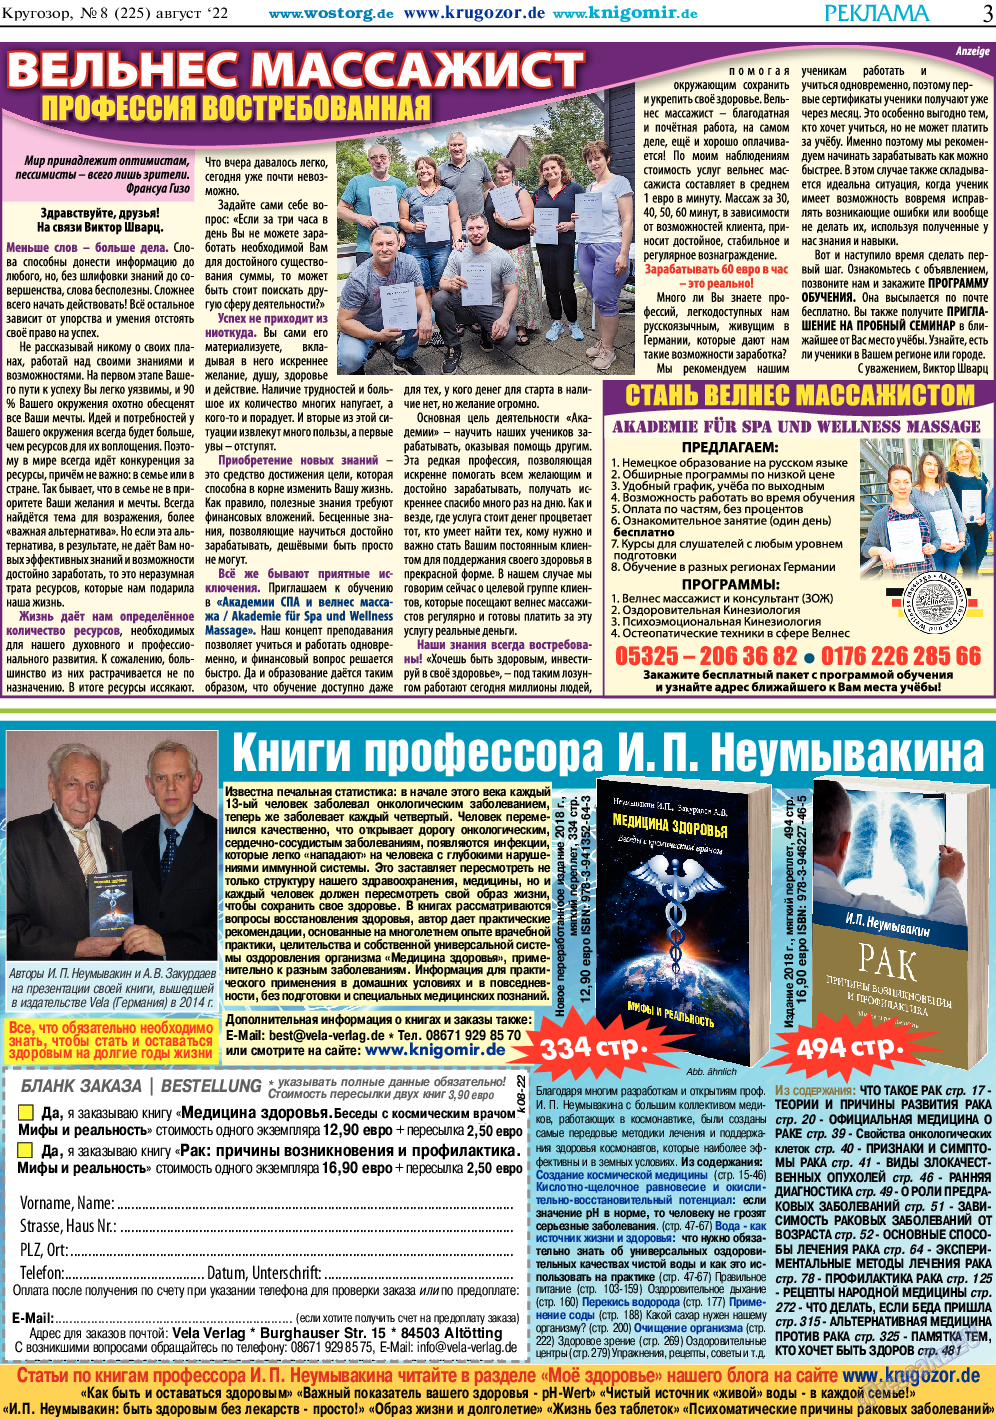 Кругозор, газета. 2022 №8 стр.3